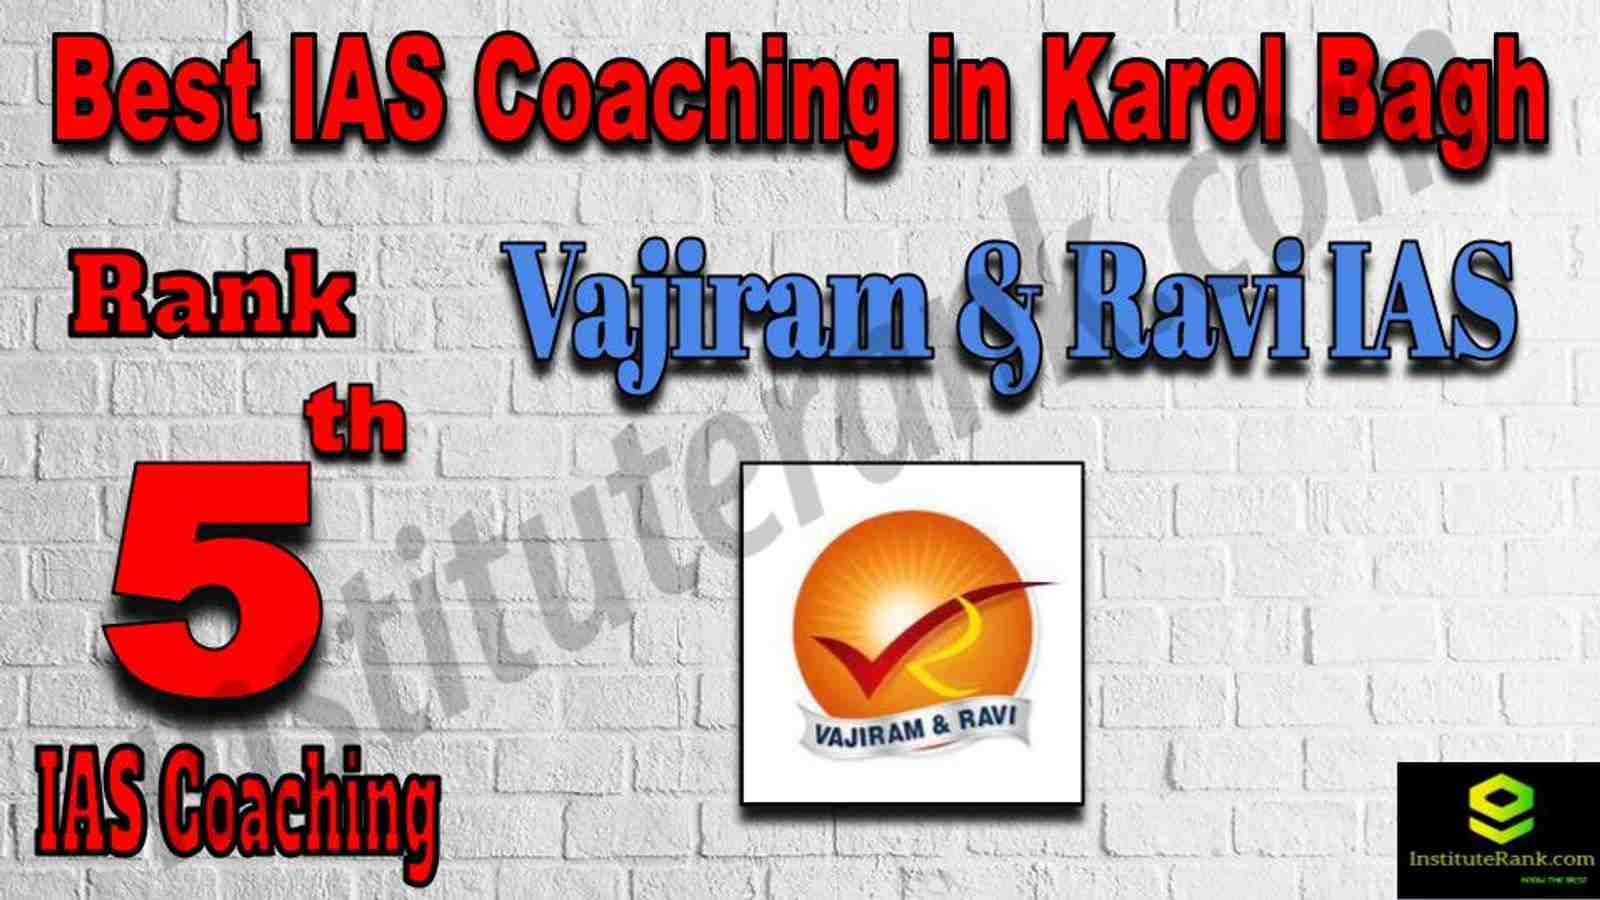 5th Best IAS Coaching in Karol Bagh